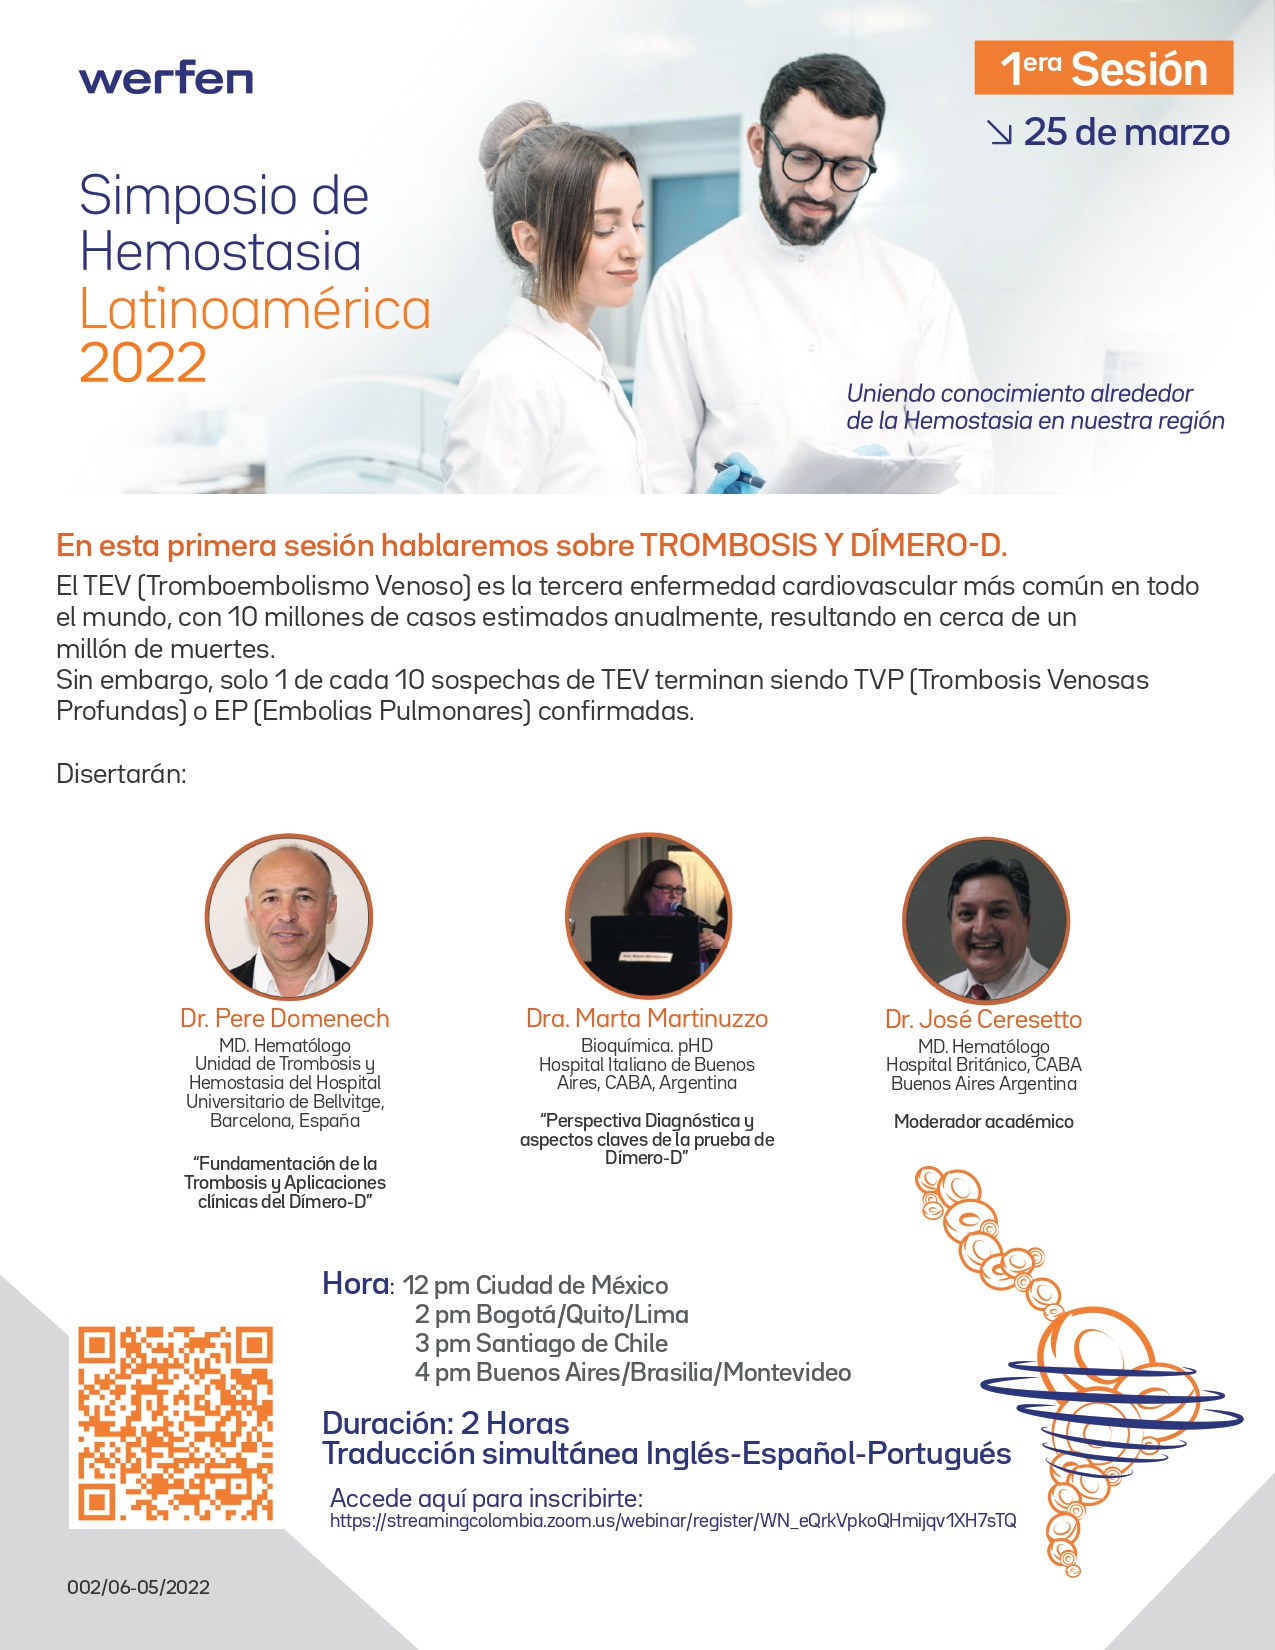 1ra Sesión del primer simposio de hemostasia latinoamérica